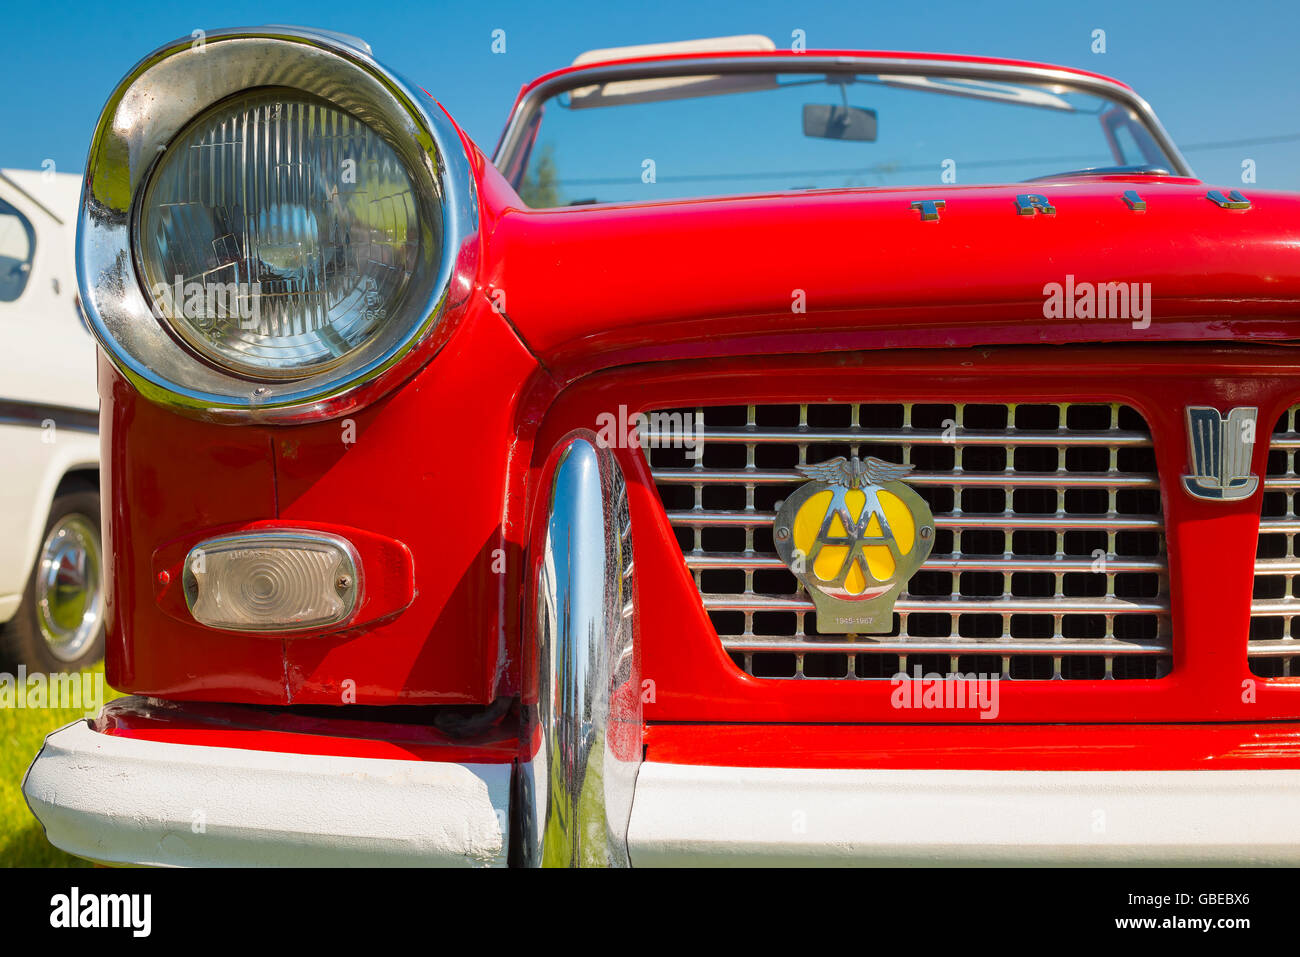 Scheinwerfer und Kühlergrill Gitter eines roten 1968 Triumph Herald Cabrio  Autos, England Stockfotografie - Alamy